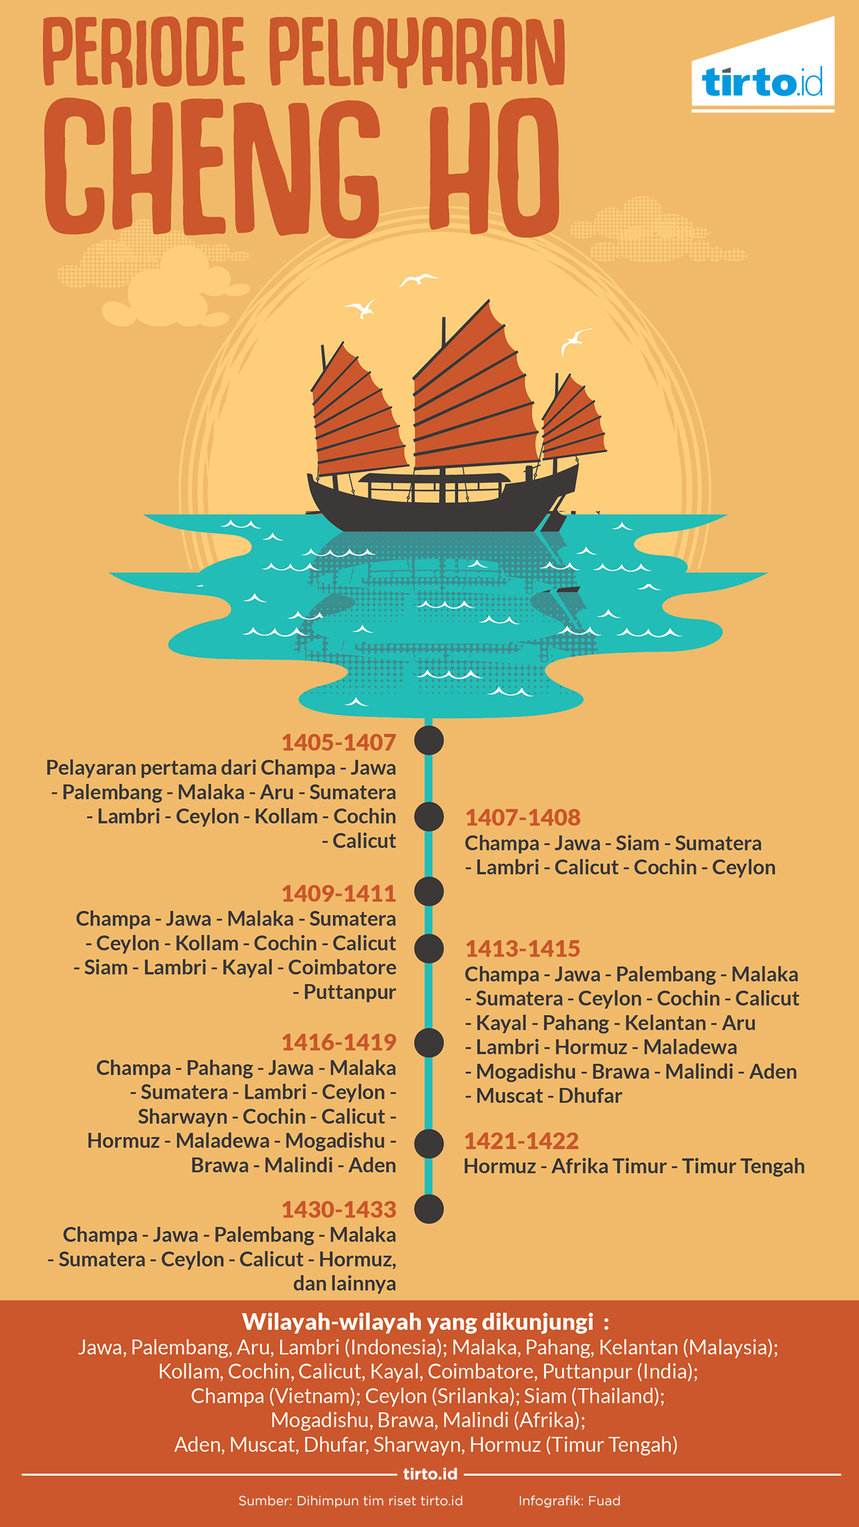 Panglima Islam Kekaisaran Cina Merambah Nusantara Tirtoid 2015